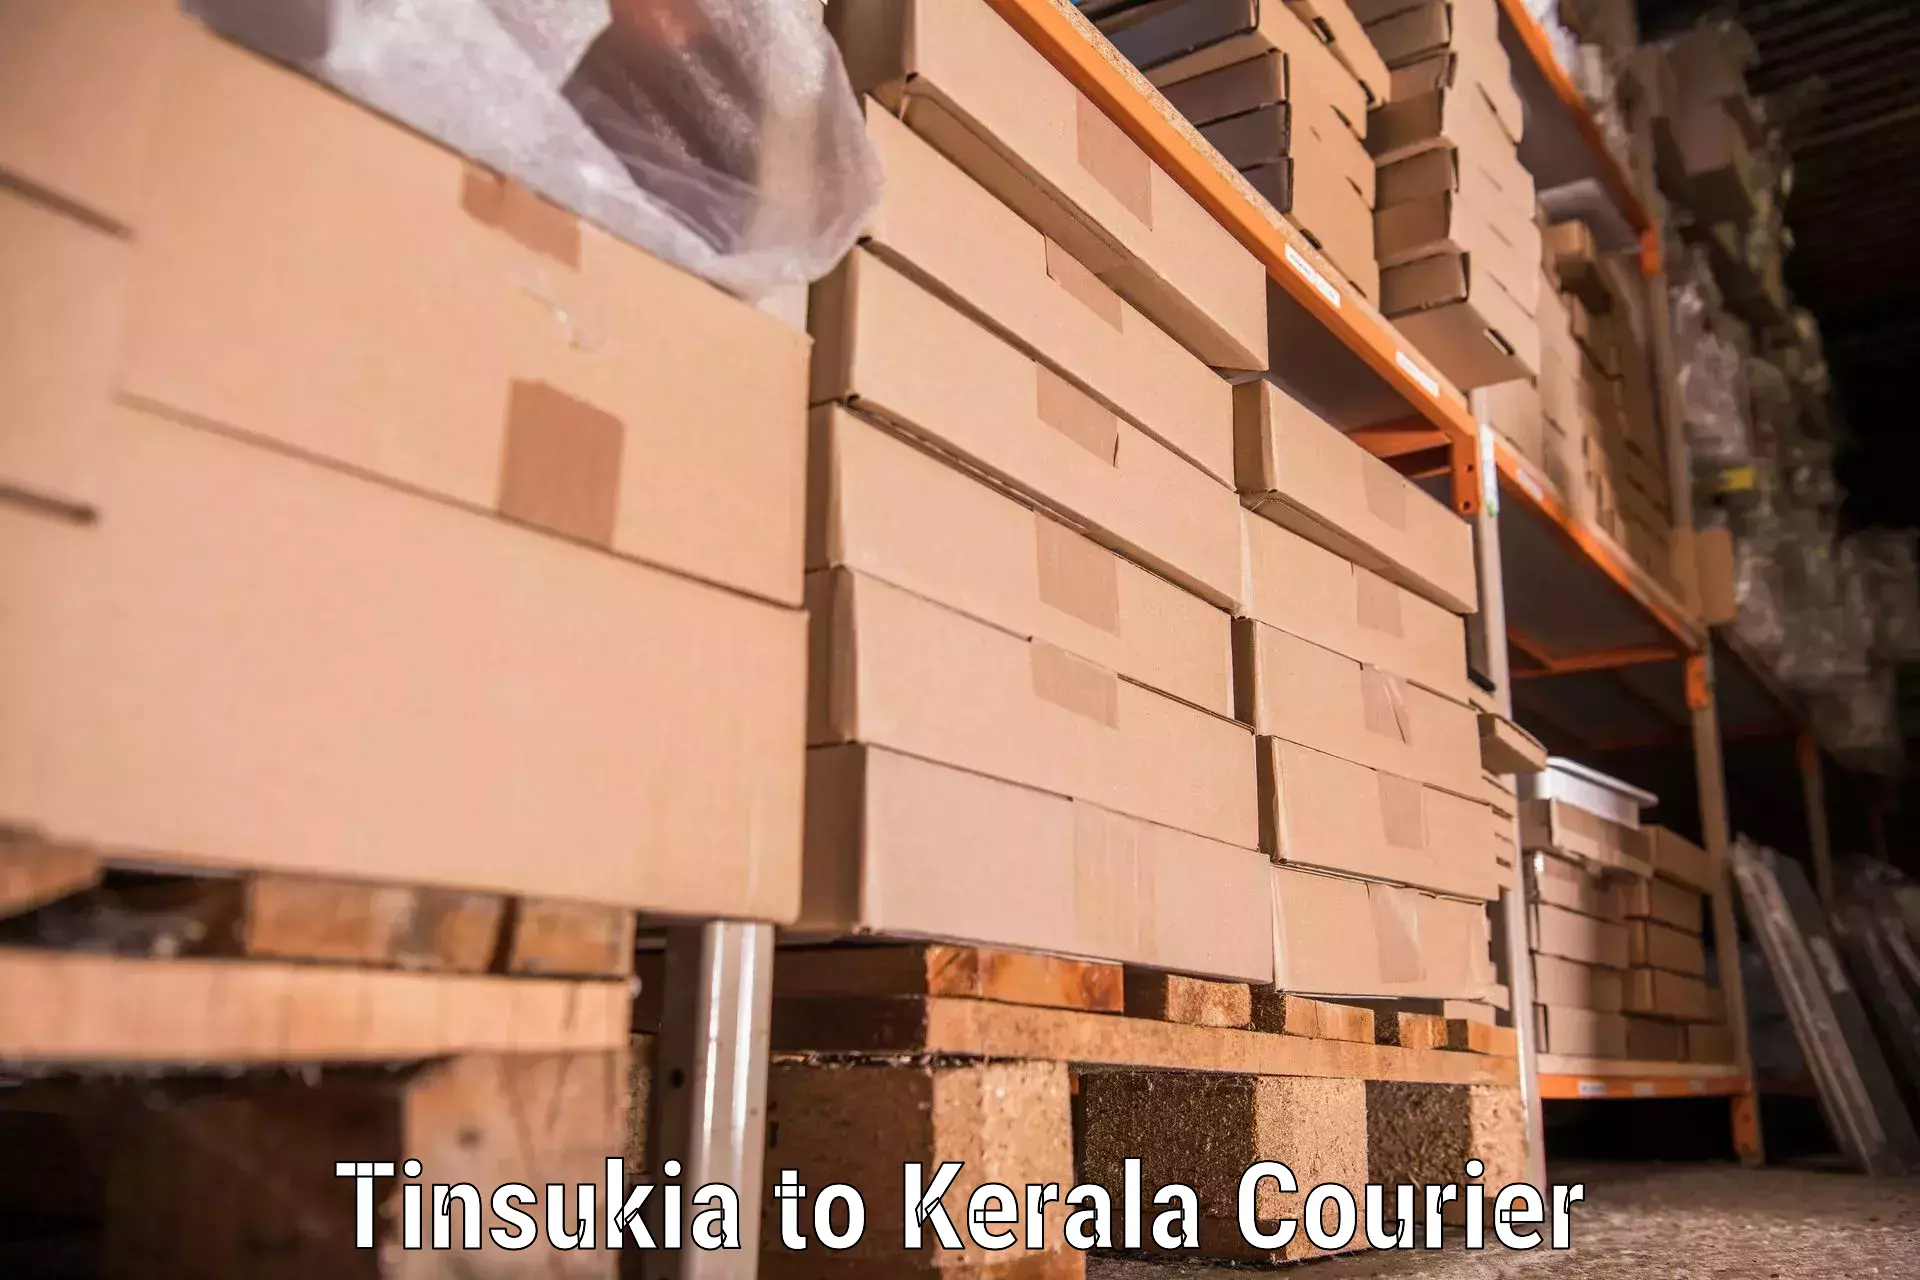 Professional home movers Tinsukia to Ernakulam